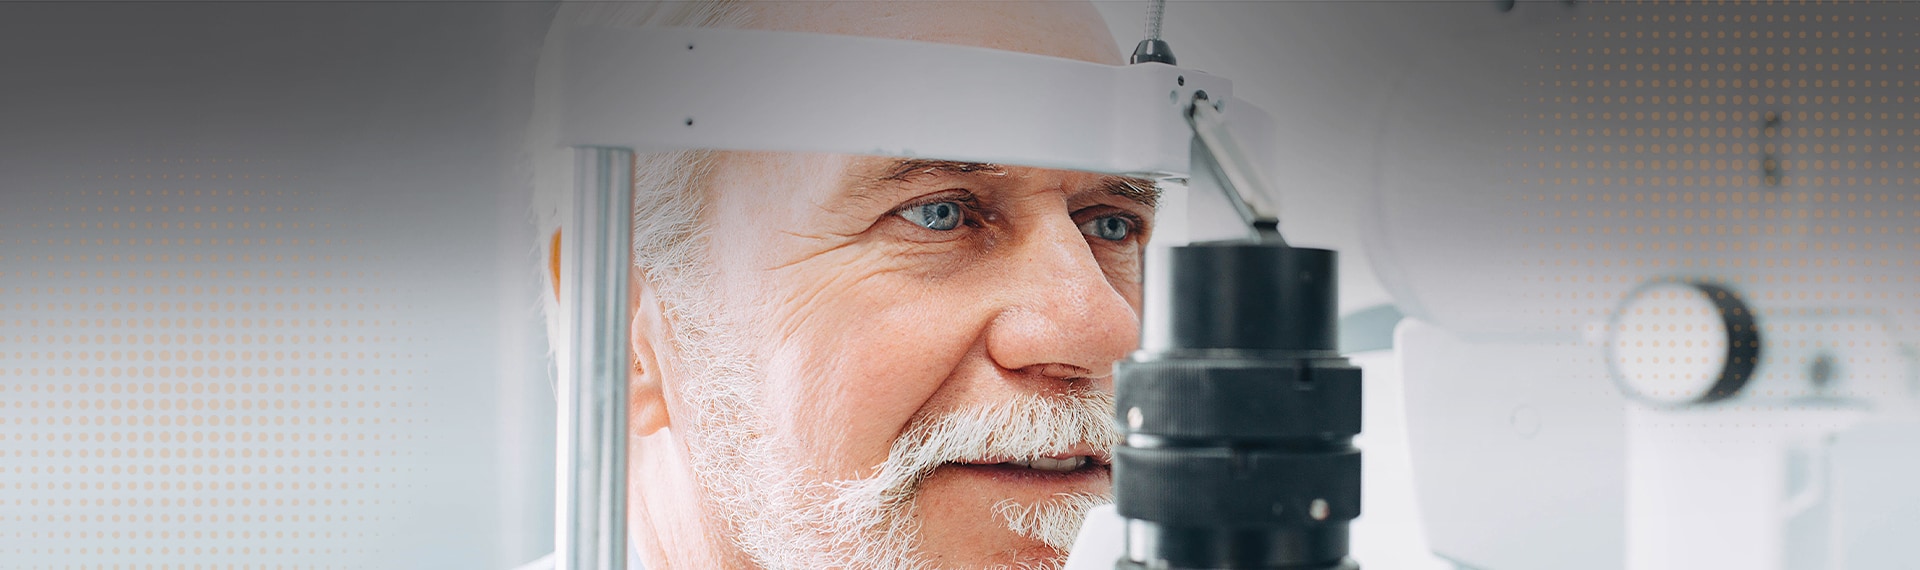 mature man getting an eye exam